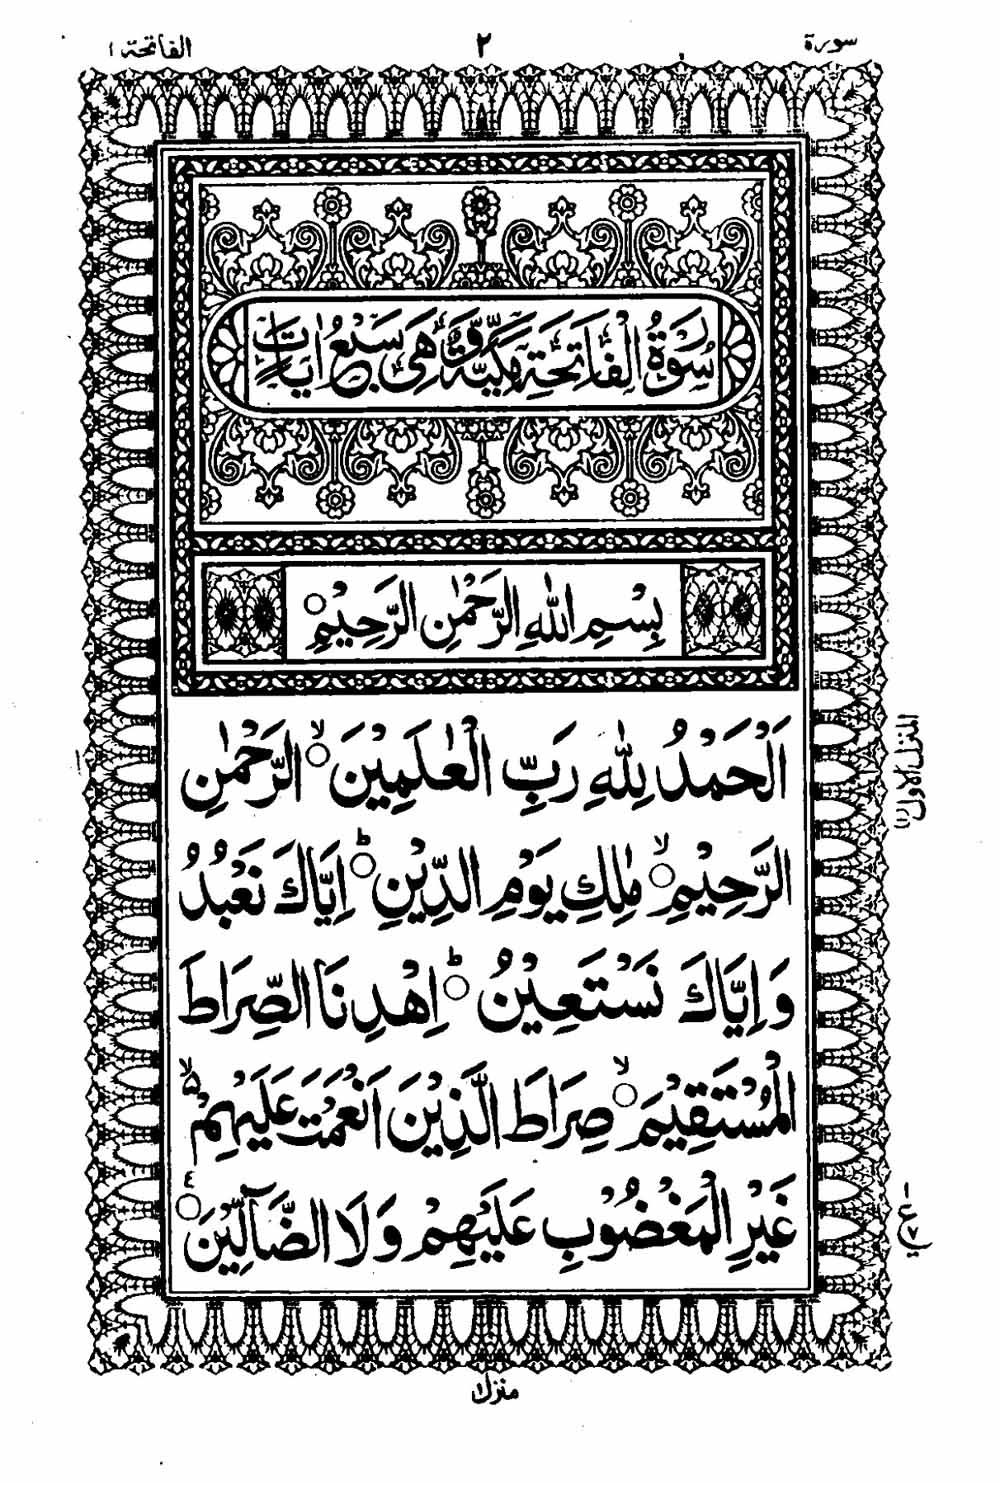 Read 16 Lines Al Quran Taj Company Part 1 Page No 3, Practice Quran